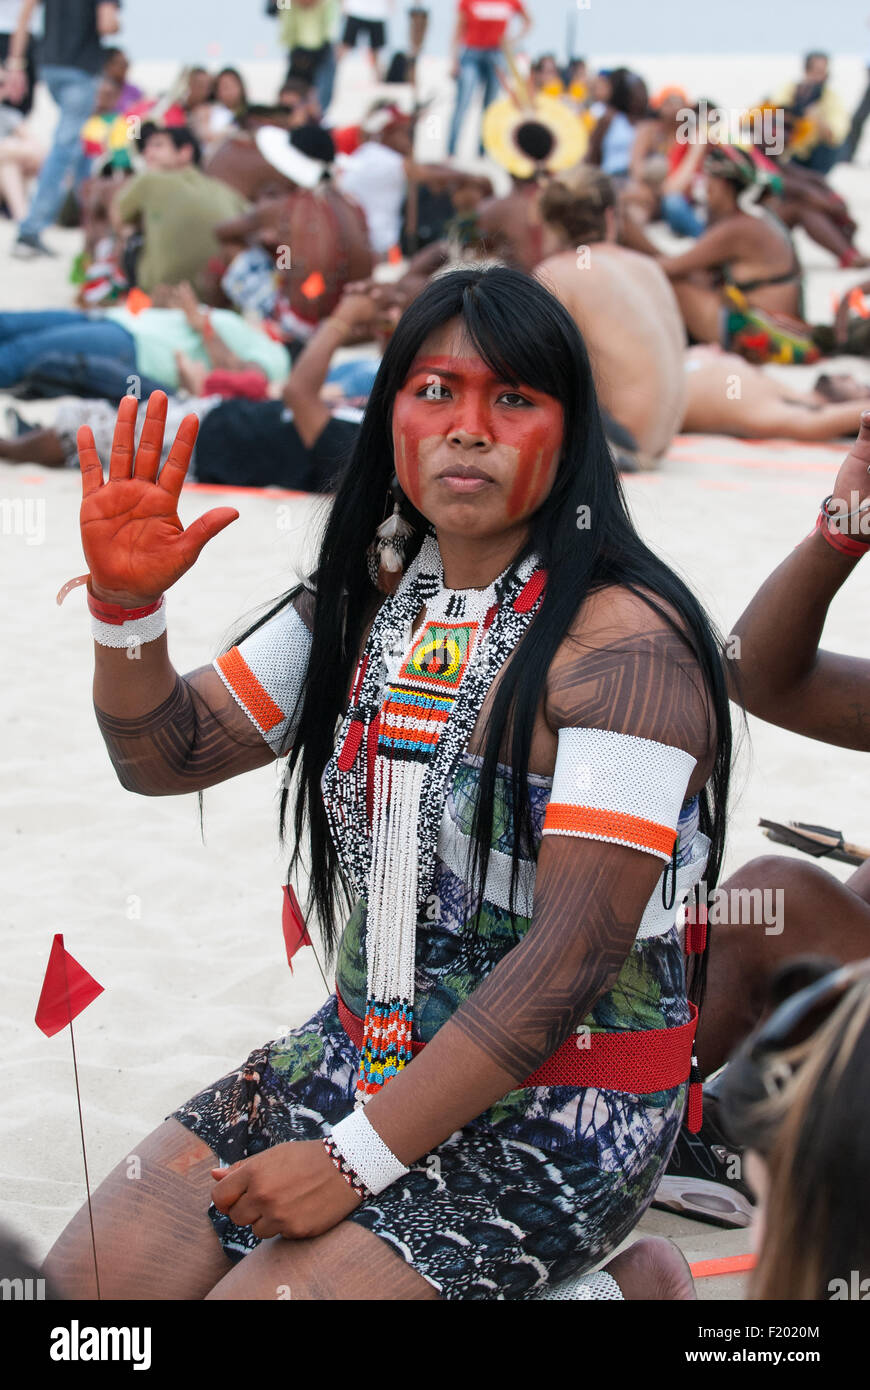 Mayalu Waura Txucarramae, un attivista indigena, presso il popolo del Vertice alla Conferenza delle Nazioni Unite sullo sviluppo sostenibile, Rio de Janeiro, Brasile, 2012. Foto © Sue Cunningham. Foto Stock